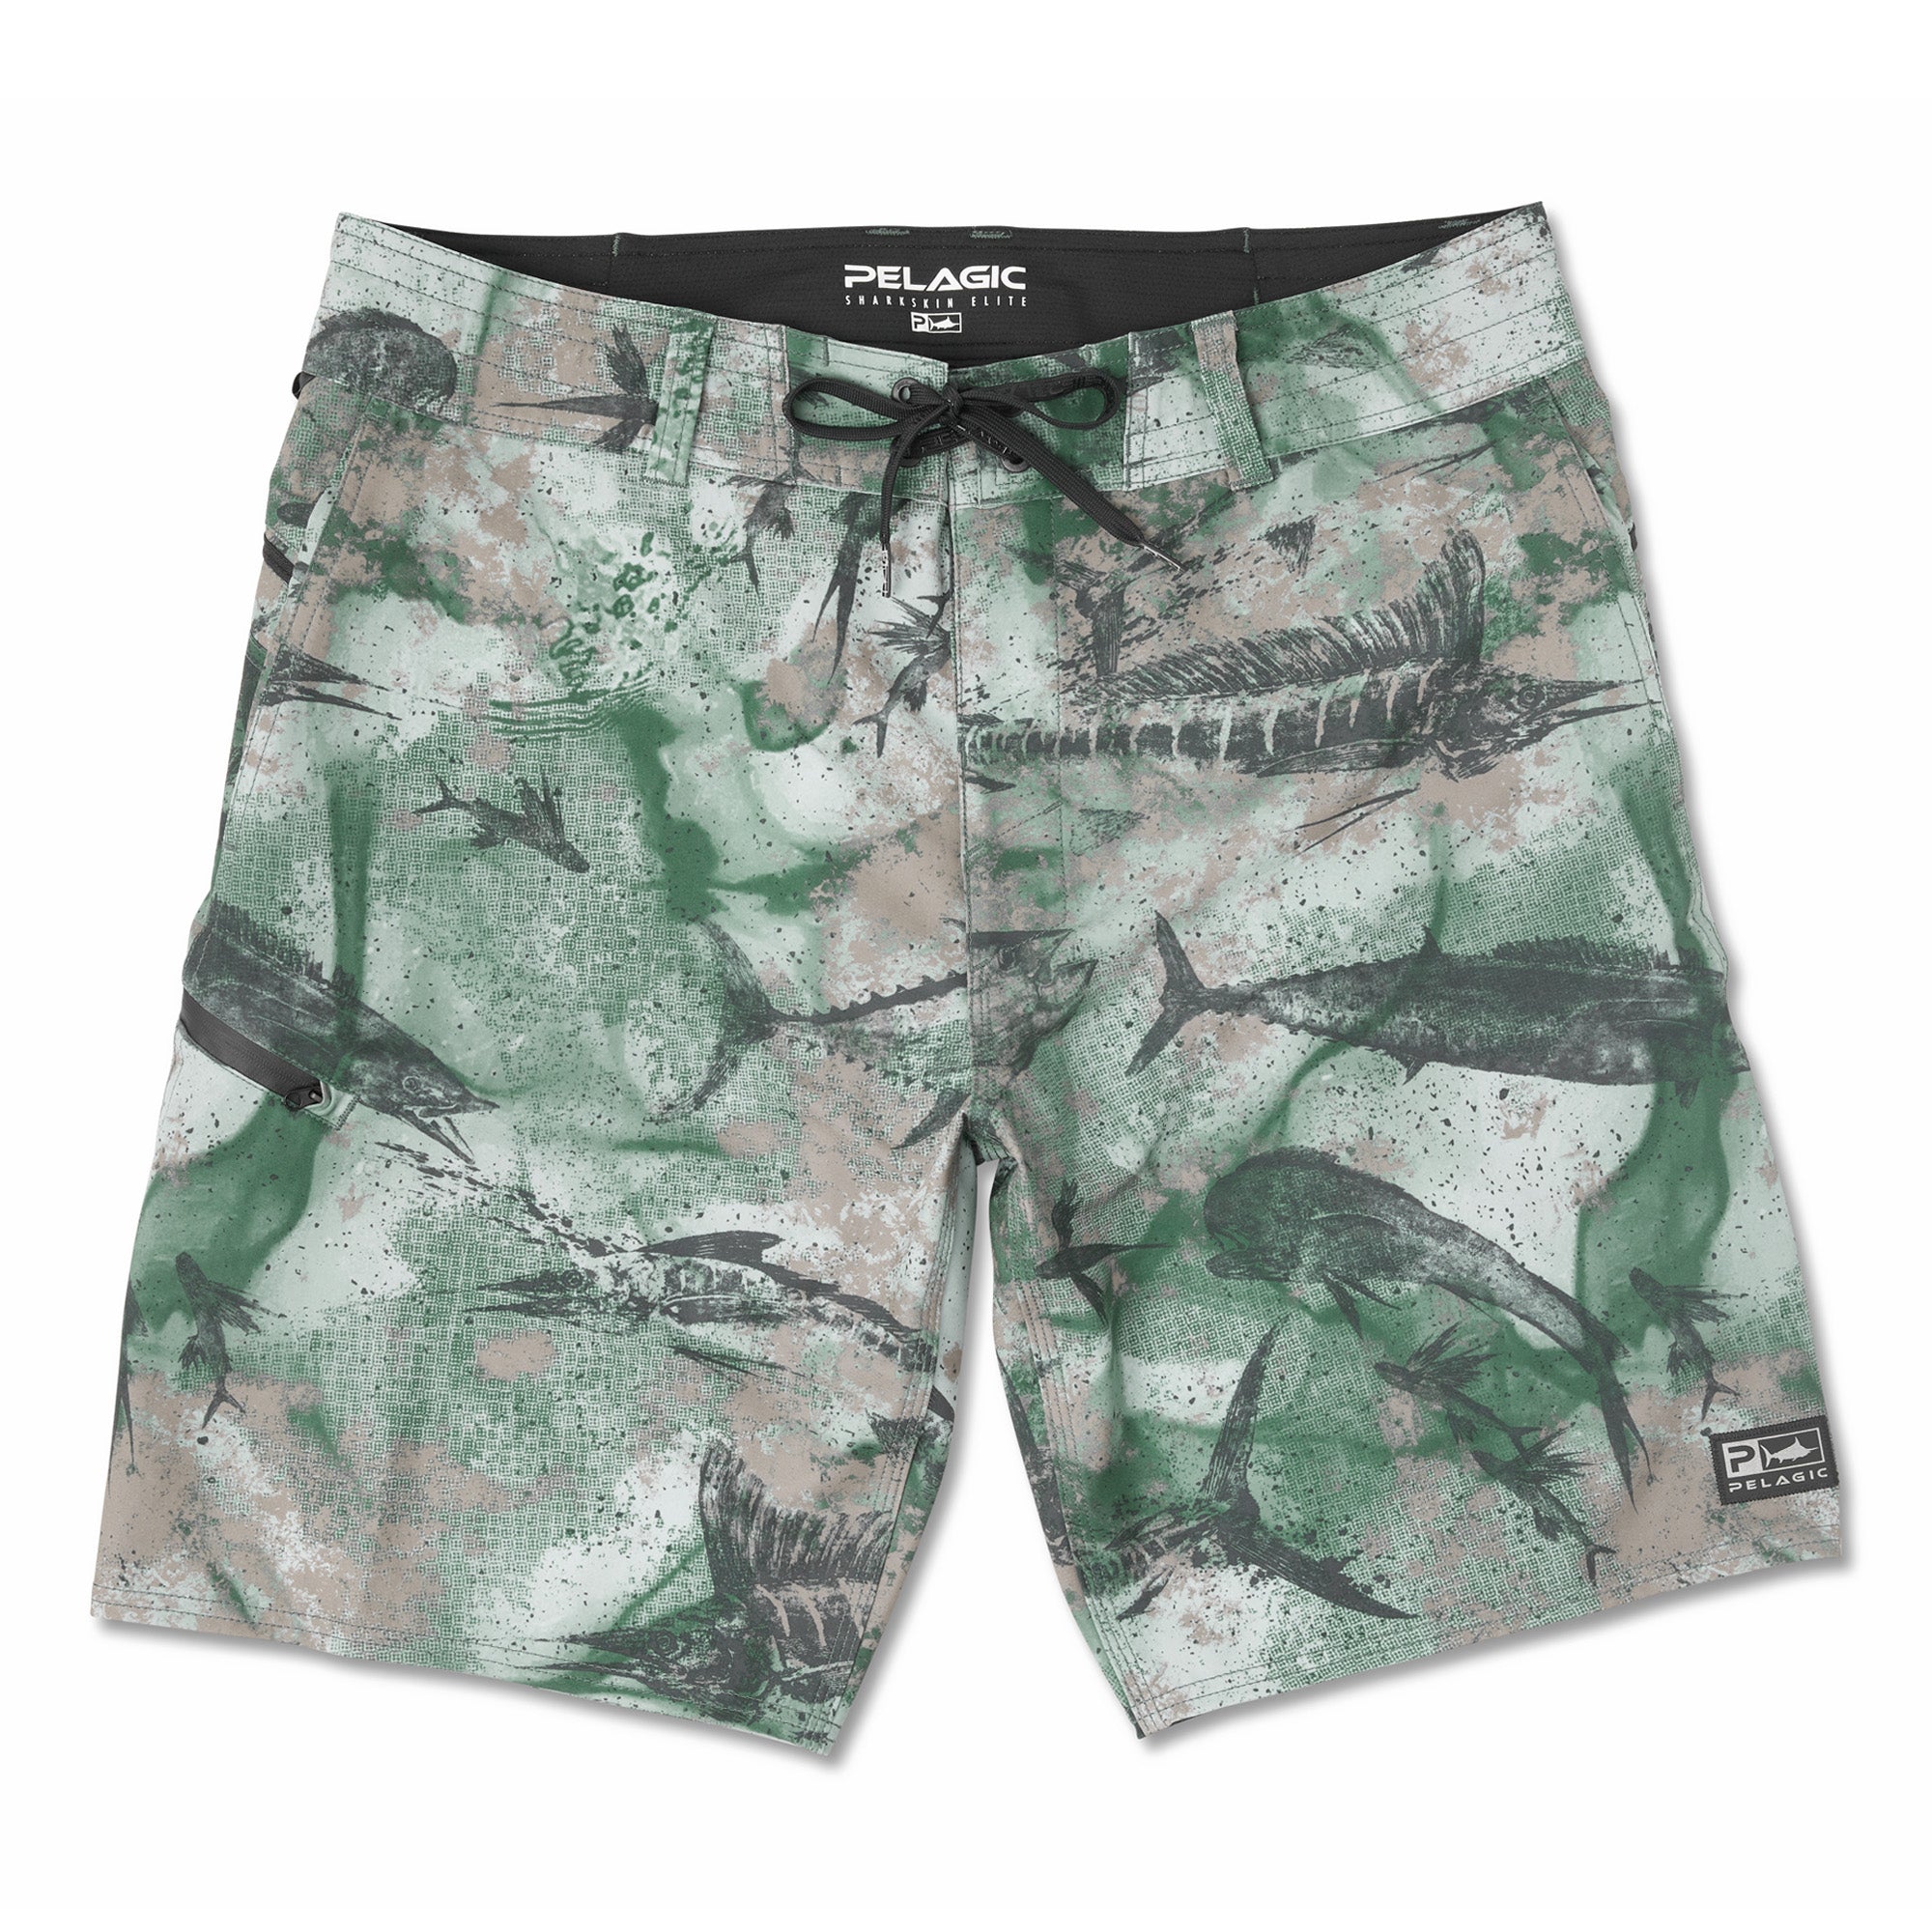 Pelagic Dorado Boardshorts Green Men's Fishing Shorts Size 38 No